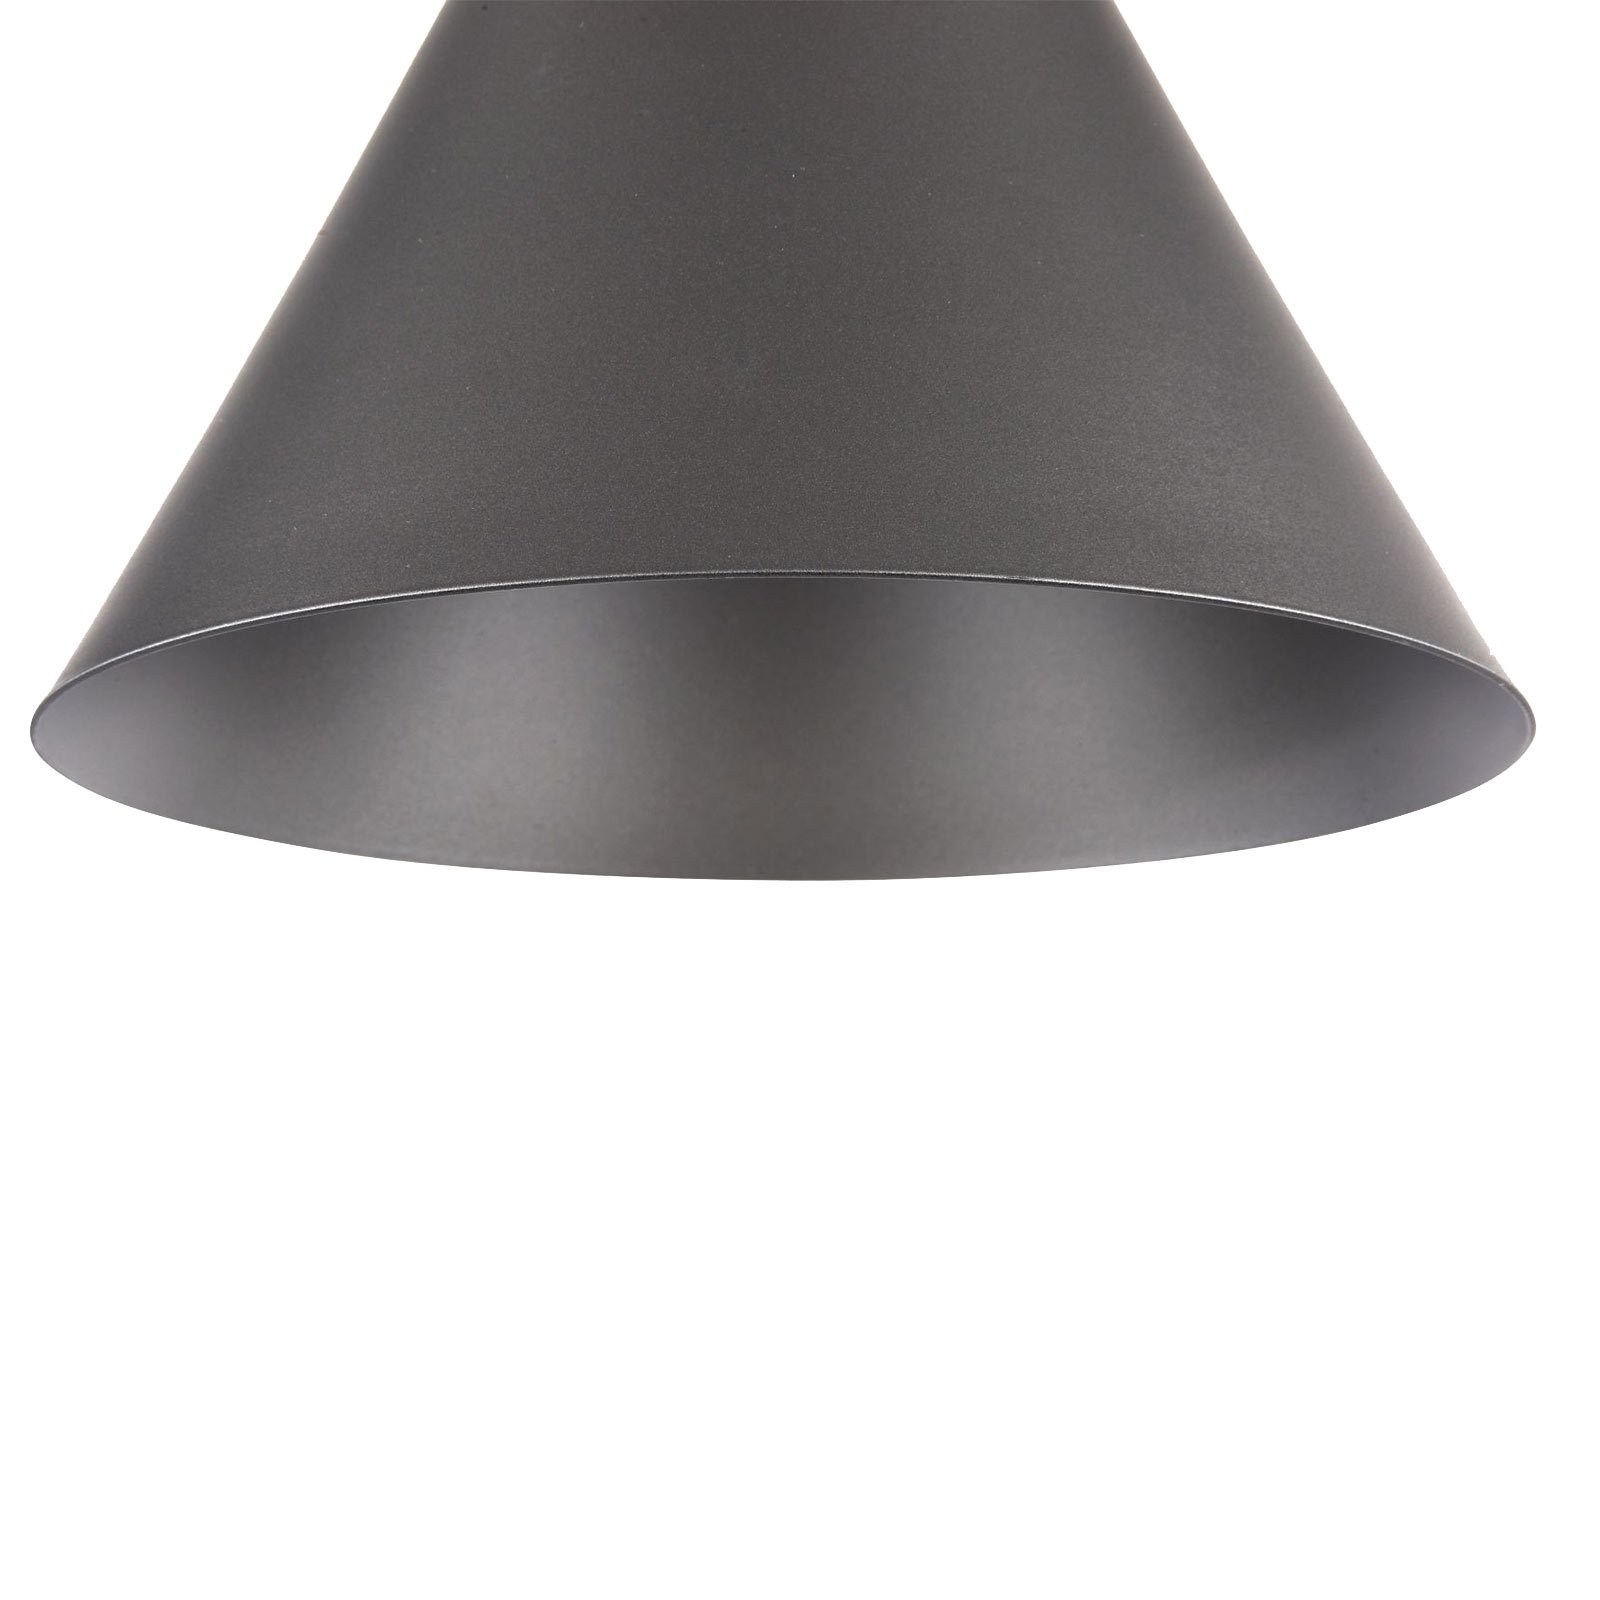 Dvokonusna viseća svjetiljka u antracit boji, Ø 22 cm